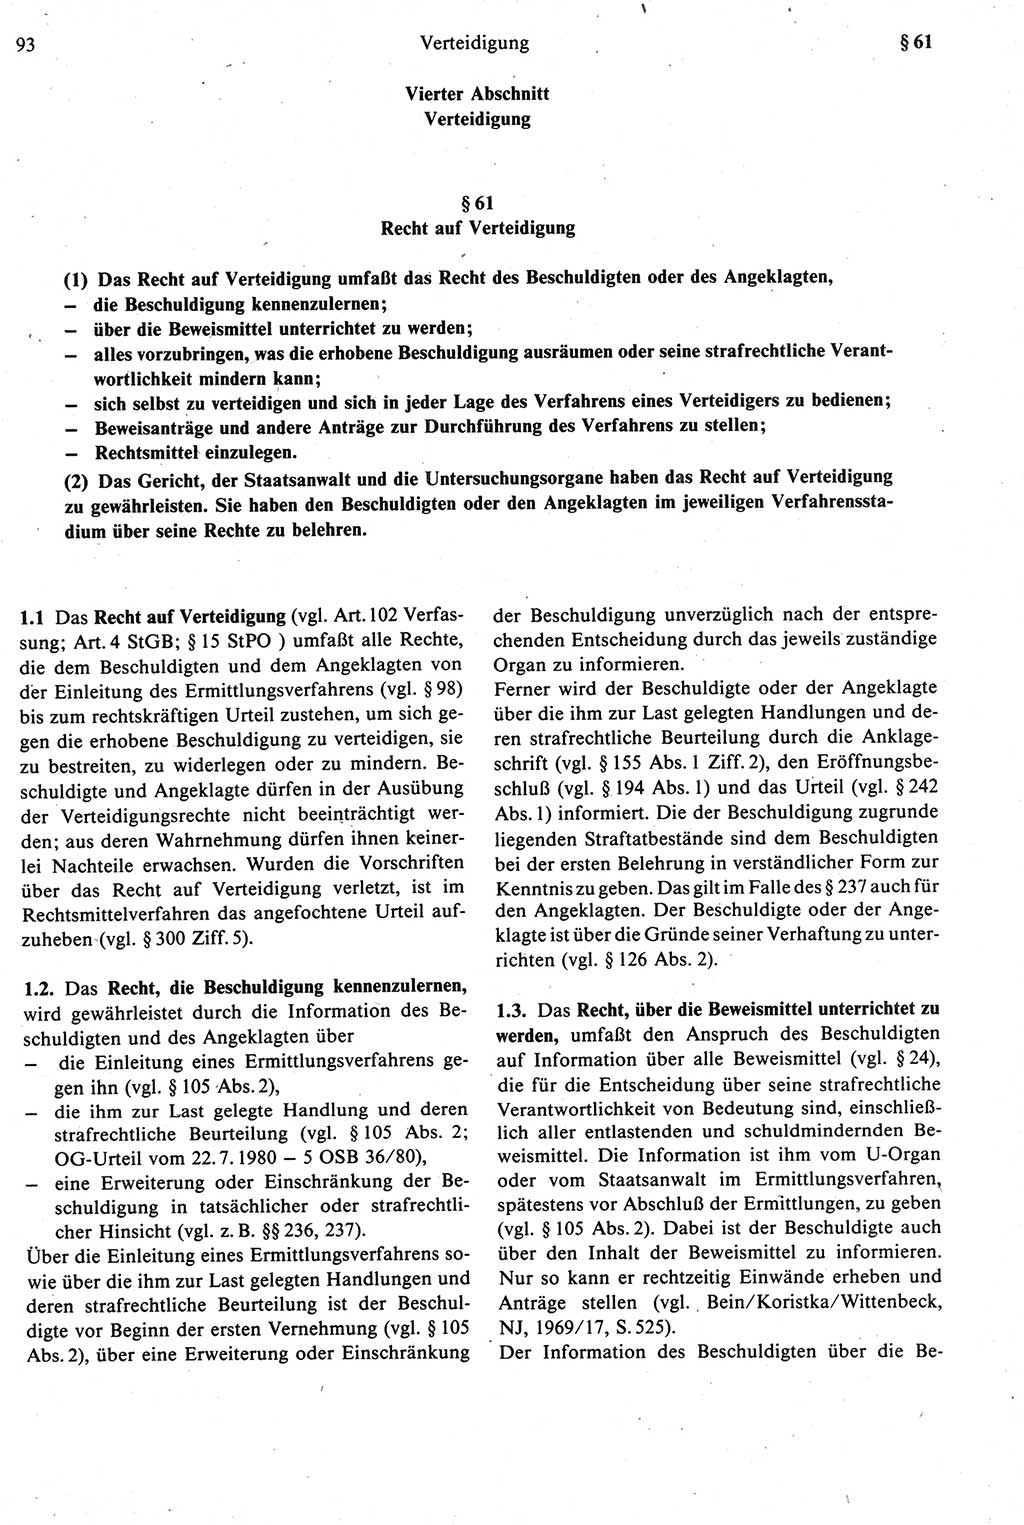 Strafprozeßrecht der DDR [Deutsche Demokratische Republik], Kommentar zur Strafprozeßordnung (StPO) 1987, Seite 93 (Strafprozeßr. DDR Komm. StPO 1987, S. 93)